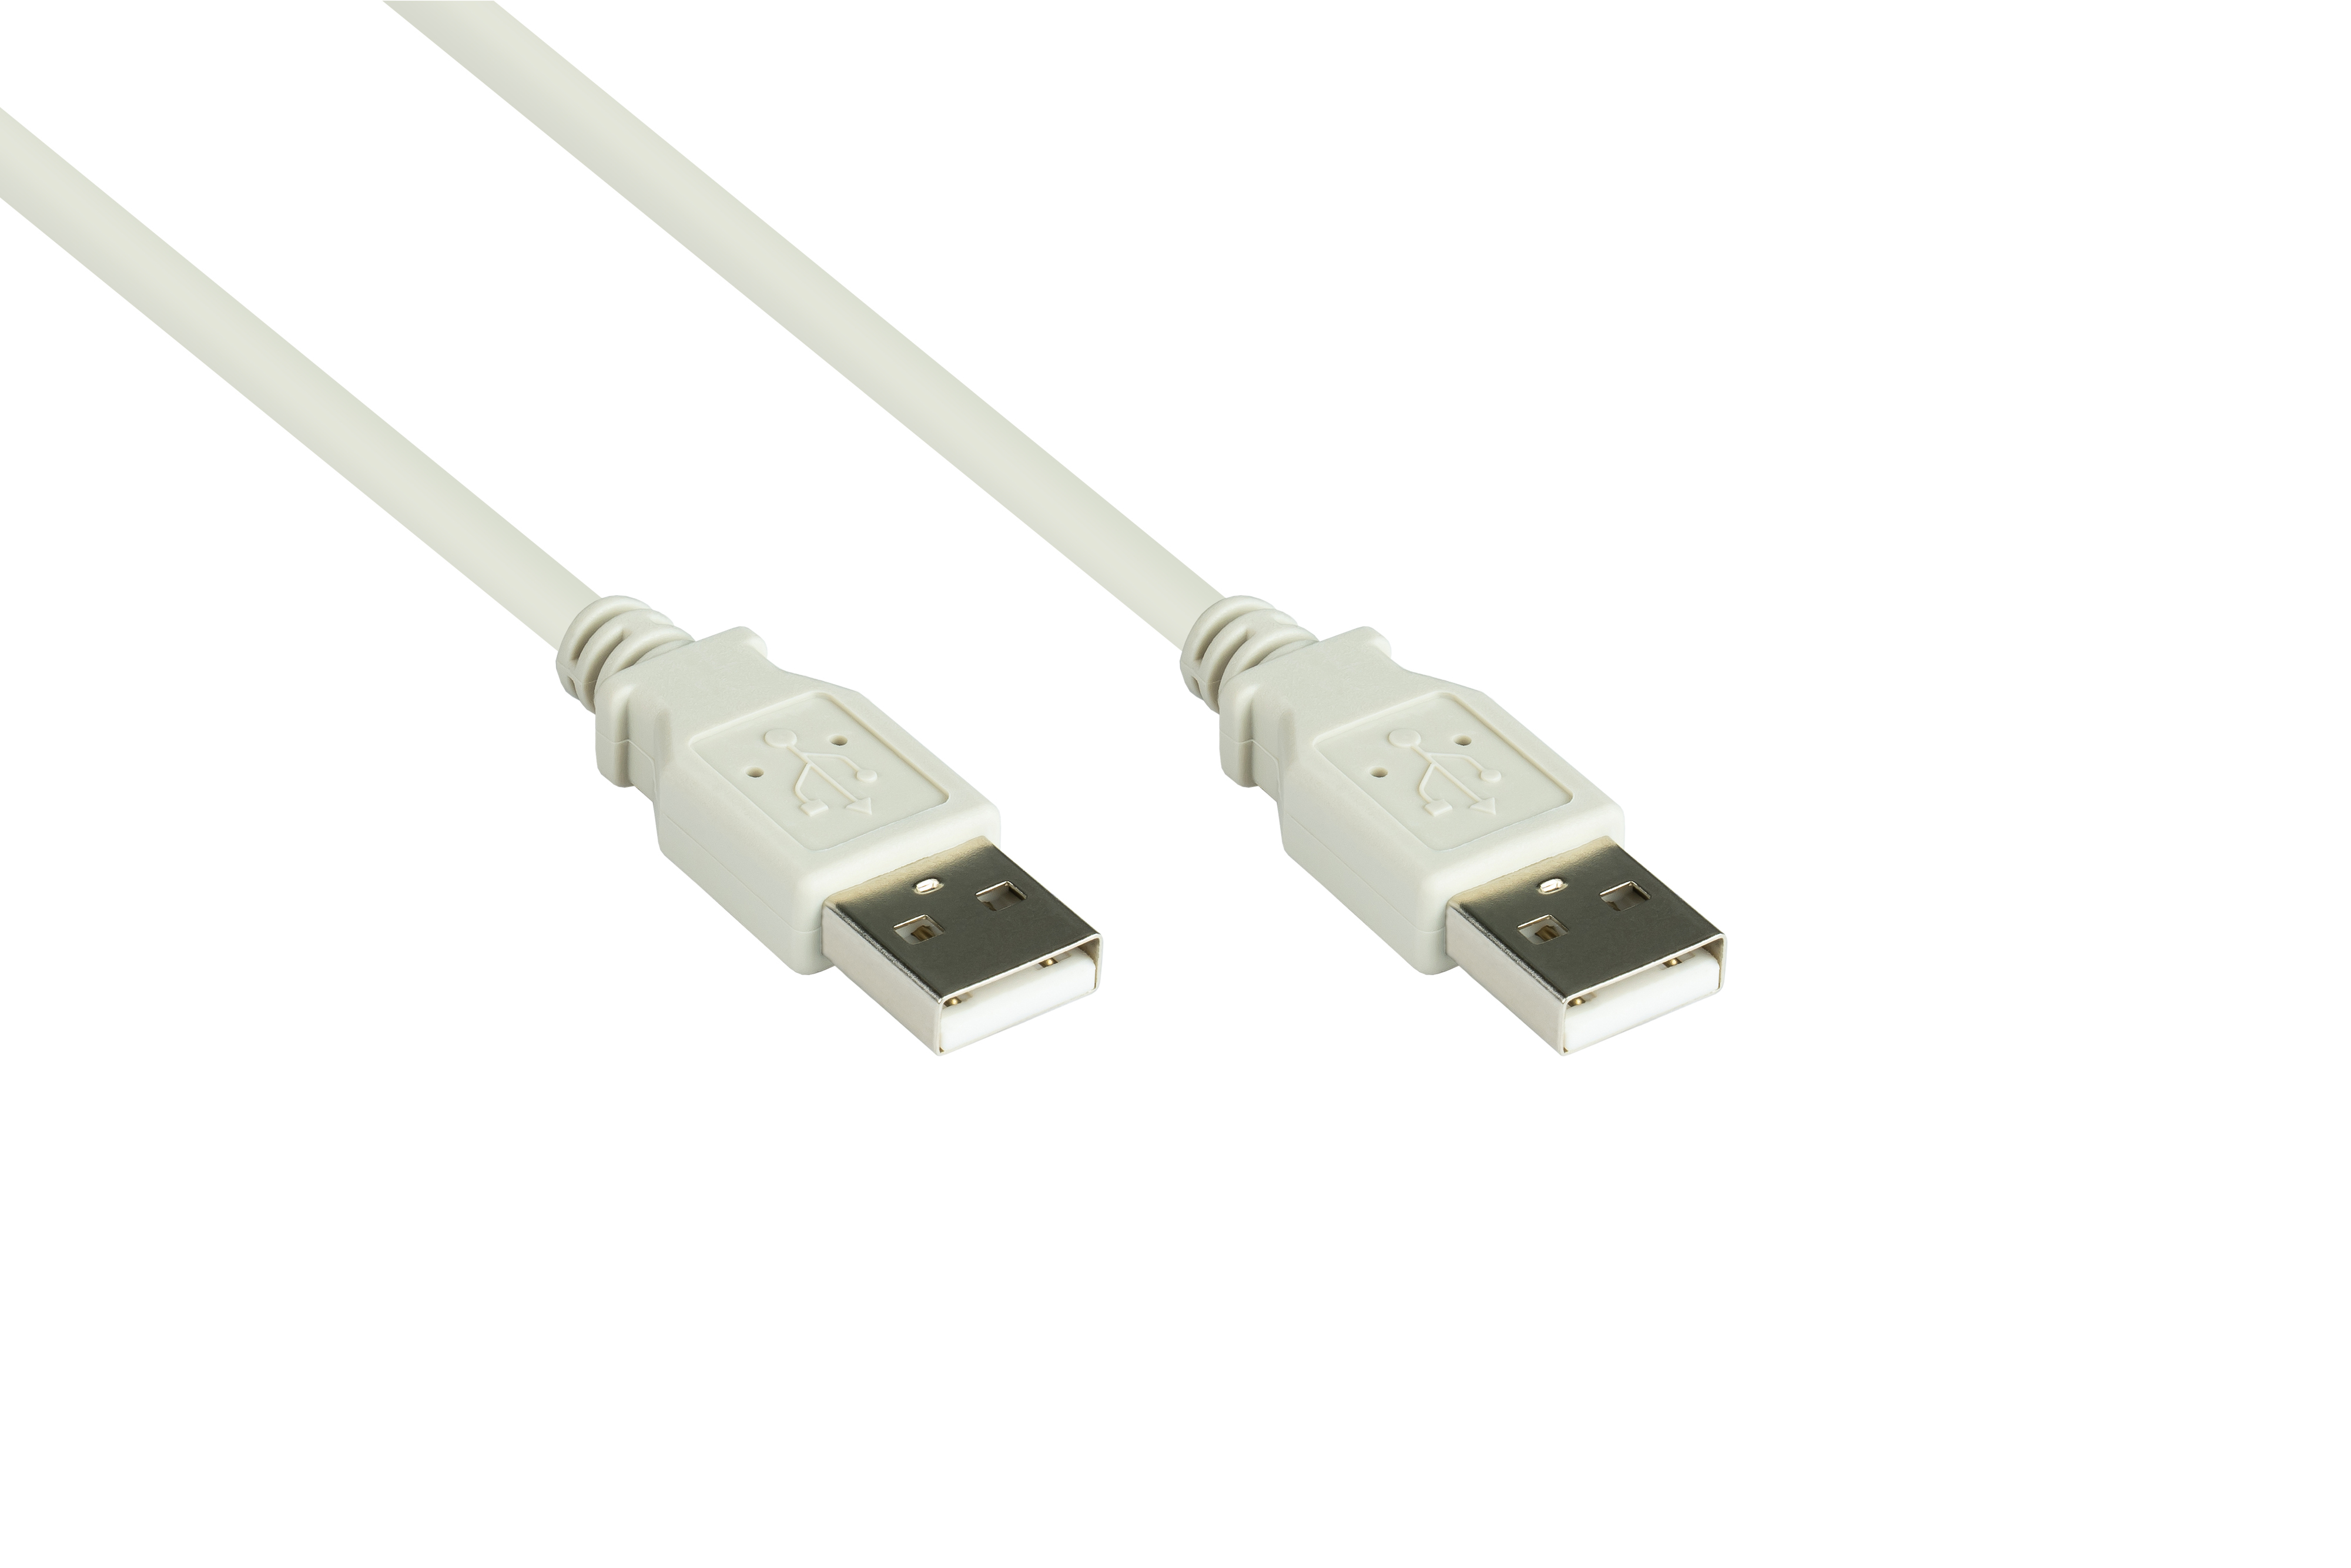 Stecker grau USB 2.0 Stecker A, Anschlusskabel CONNECTIONS A an GOOD